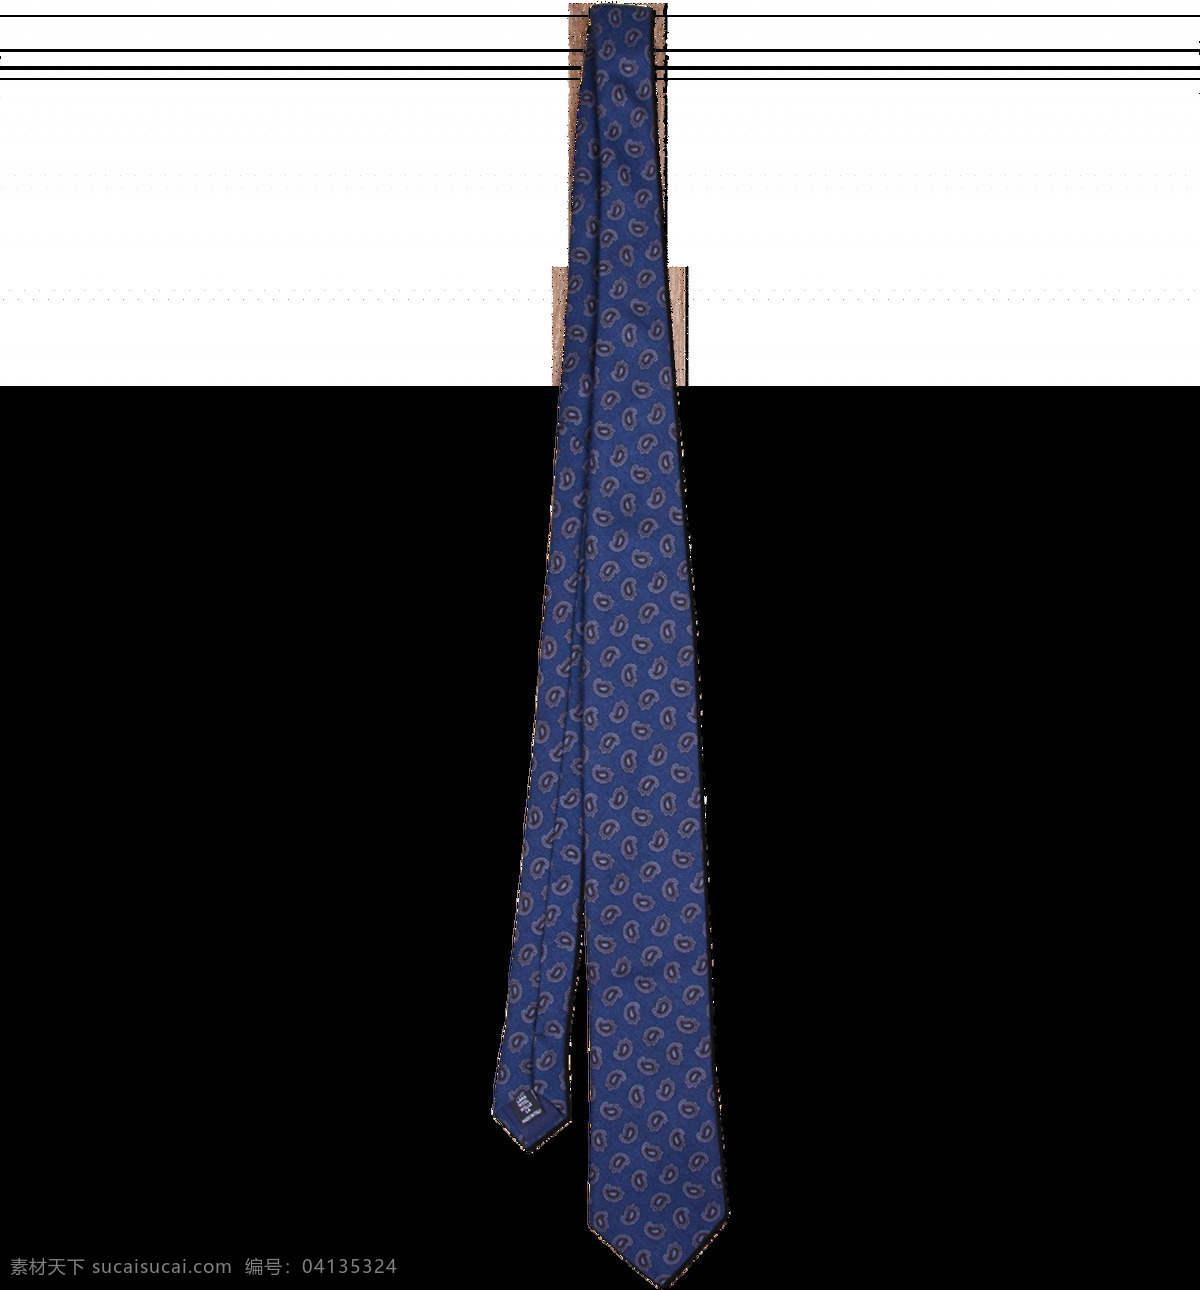 蓝色 小 领带 免 抠 透明 图 层 男士领带图片 领带节 短领带 ps 摸领带 扶领带 细领带 西装领带 女士领带 商务领带 正装领带 休闲领带 领带图片 条纹领带 格子领带